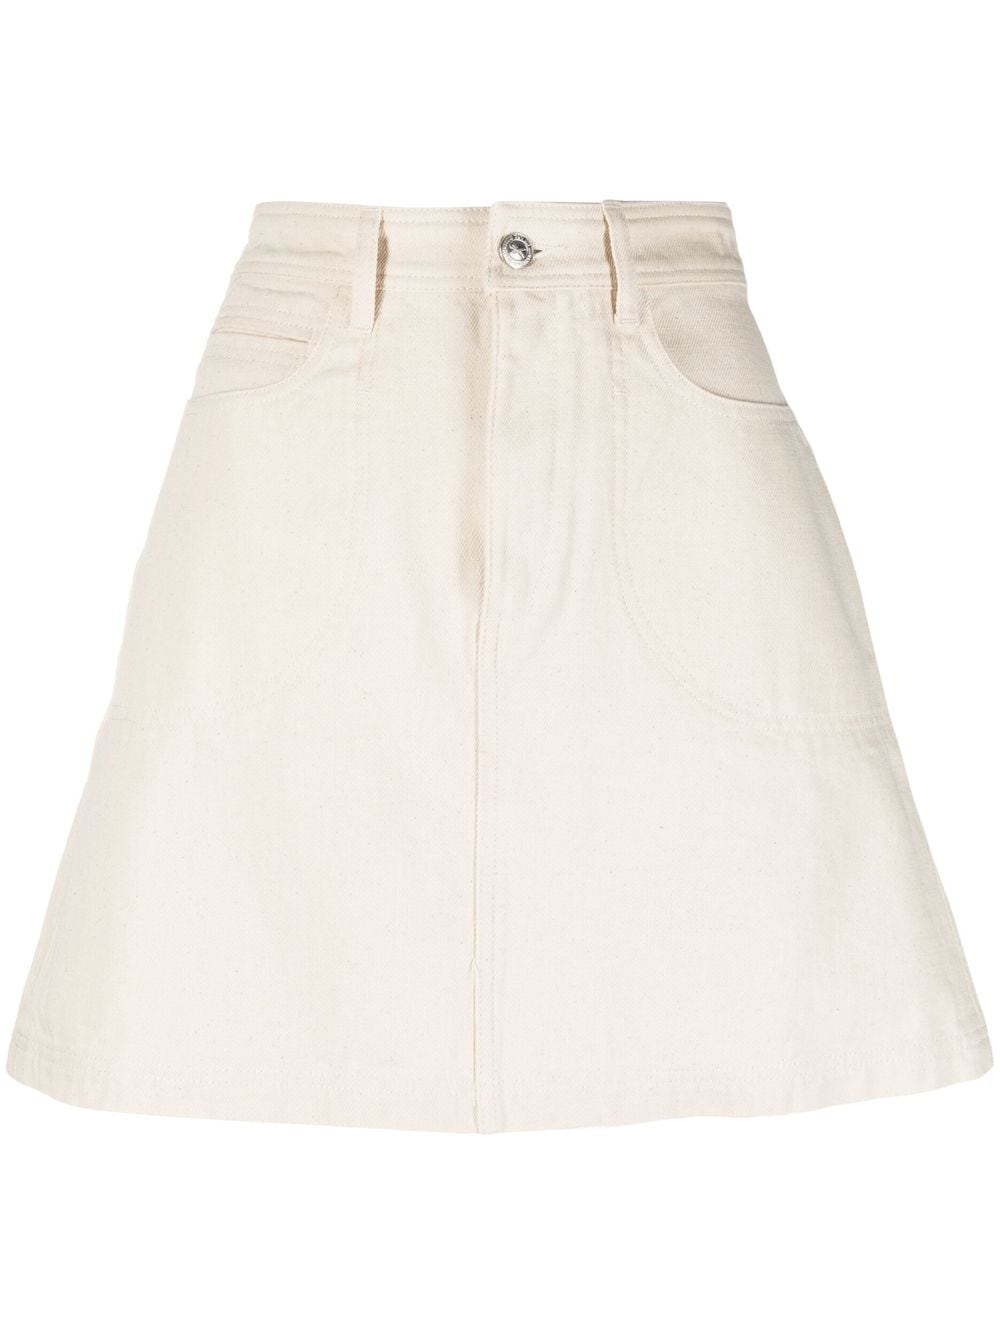 Apc Flavia Denim Miniskirt In White